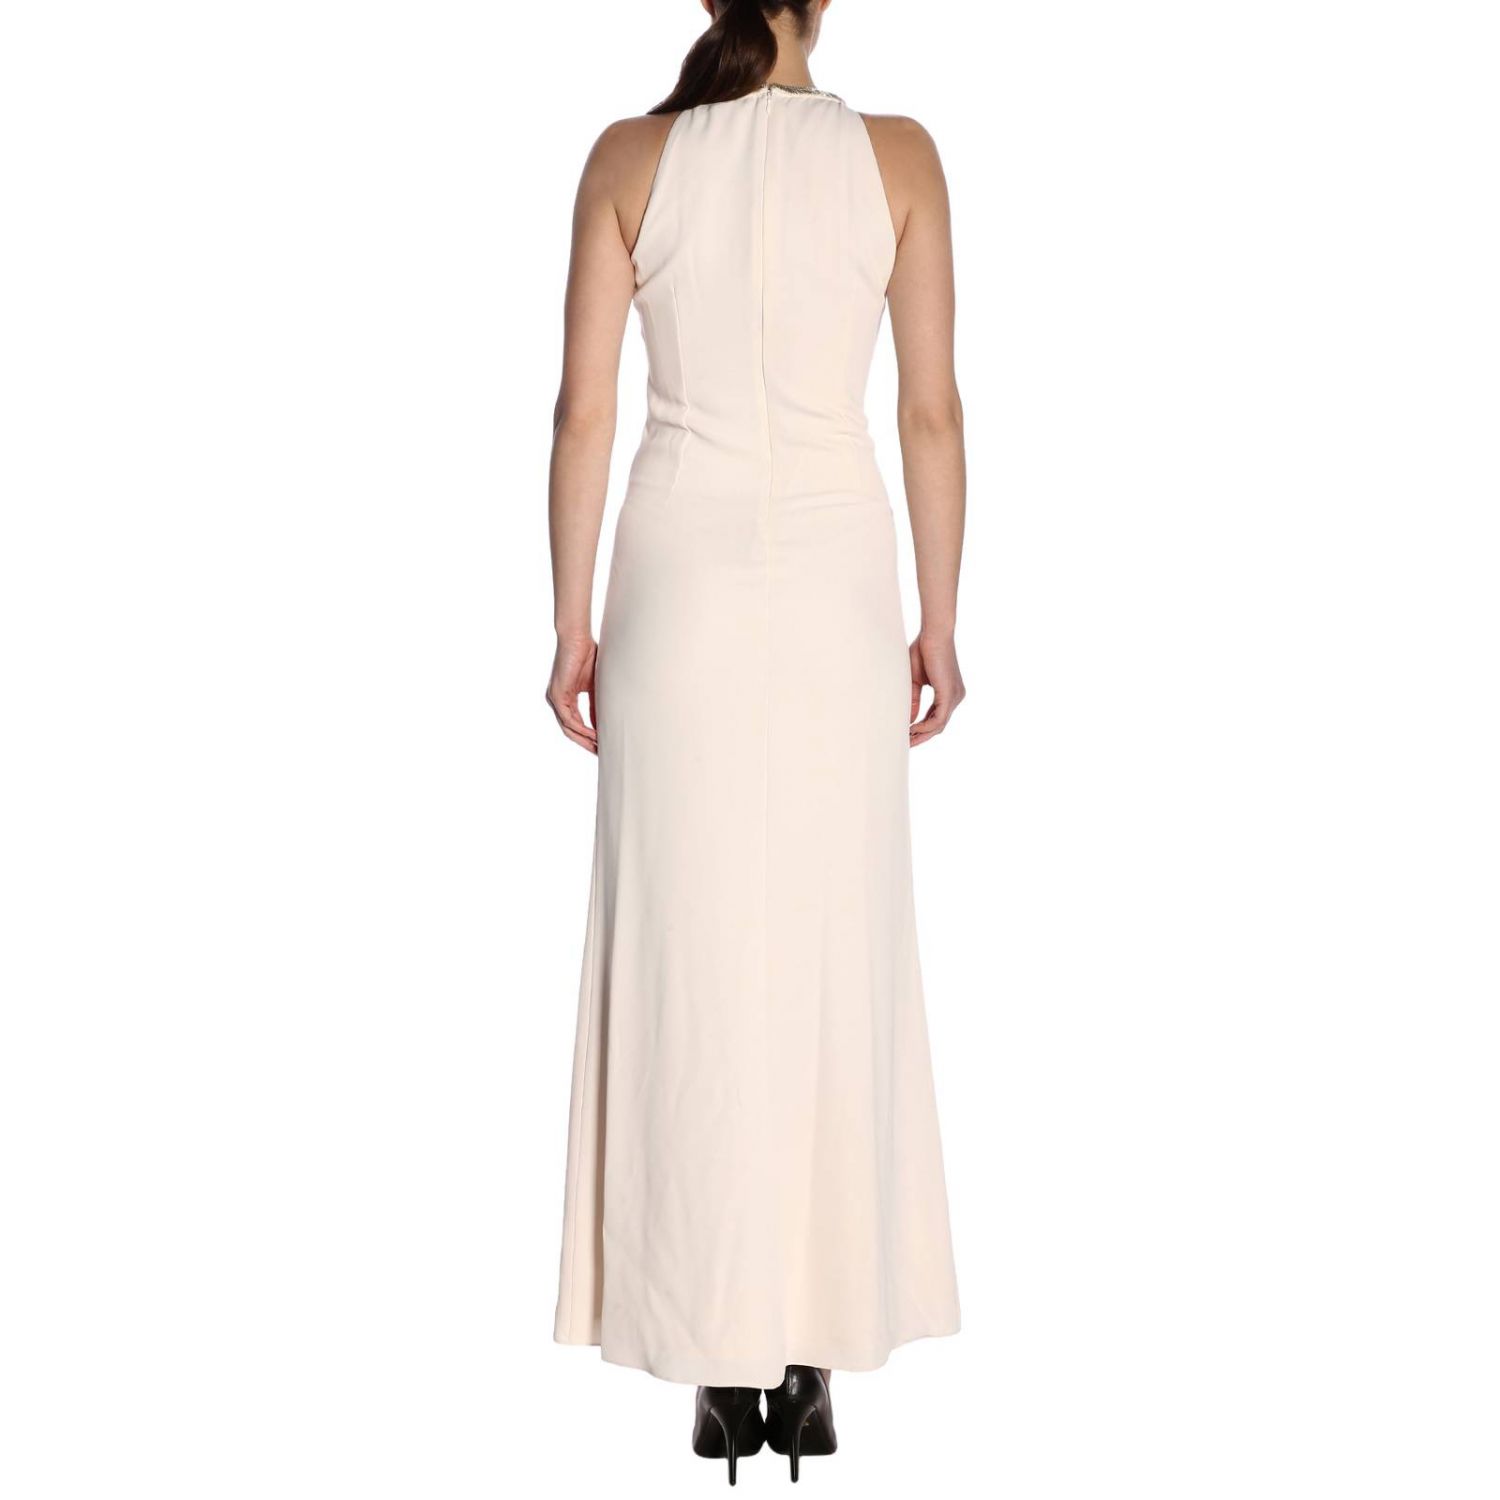 Lauren Ralph Lauren Outlet: Dress women | Dress Lauren Ralph Lauren ...